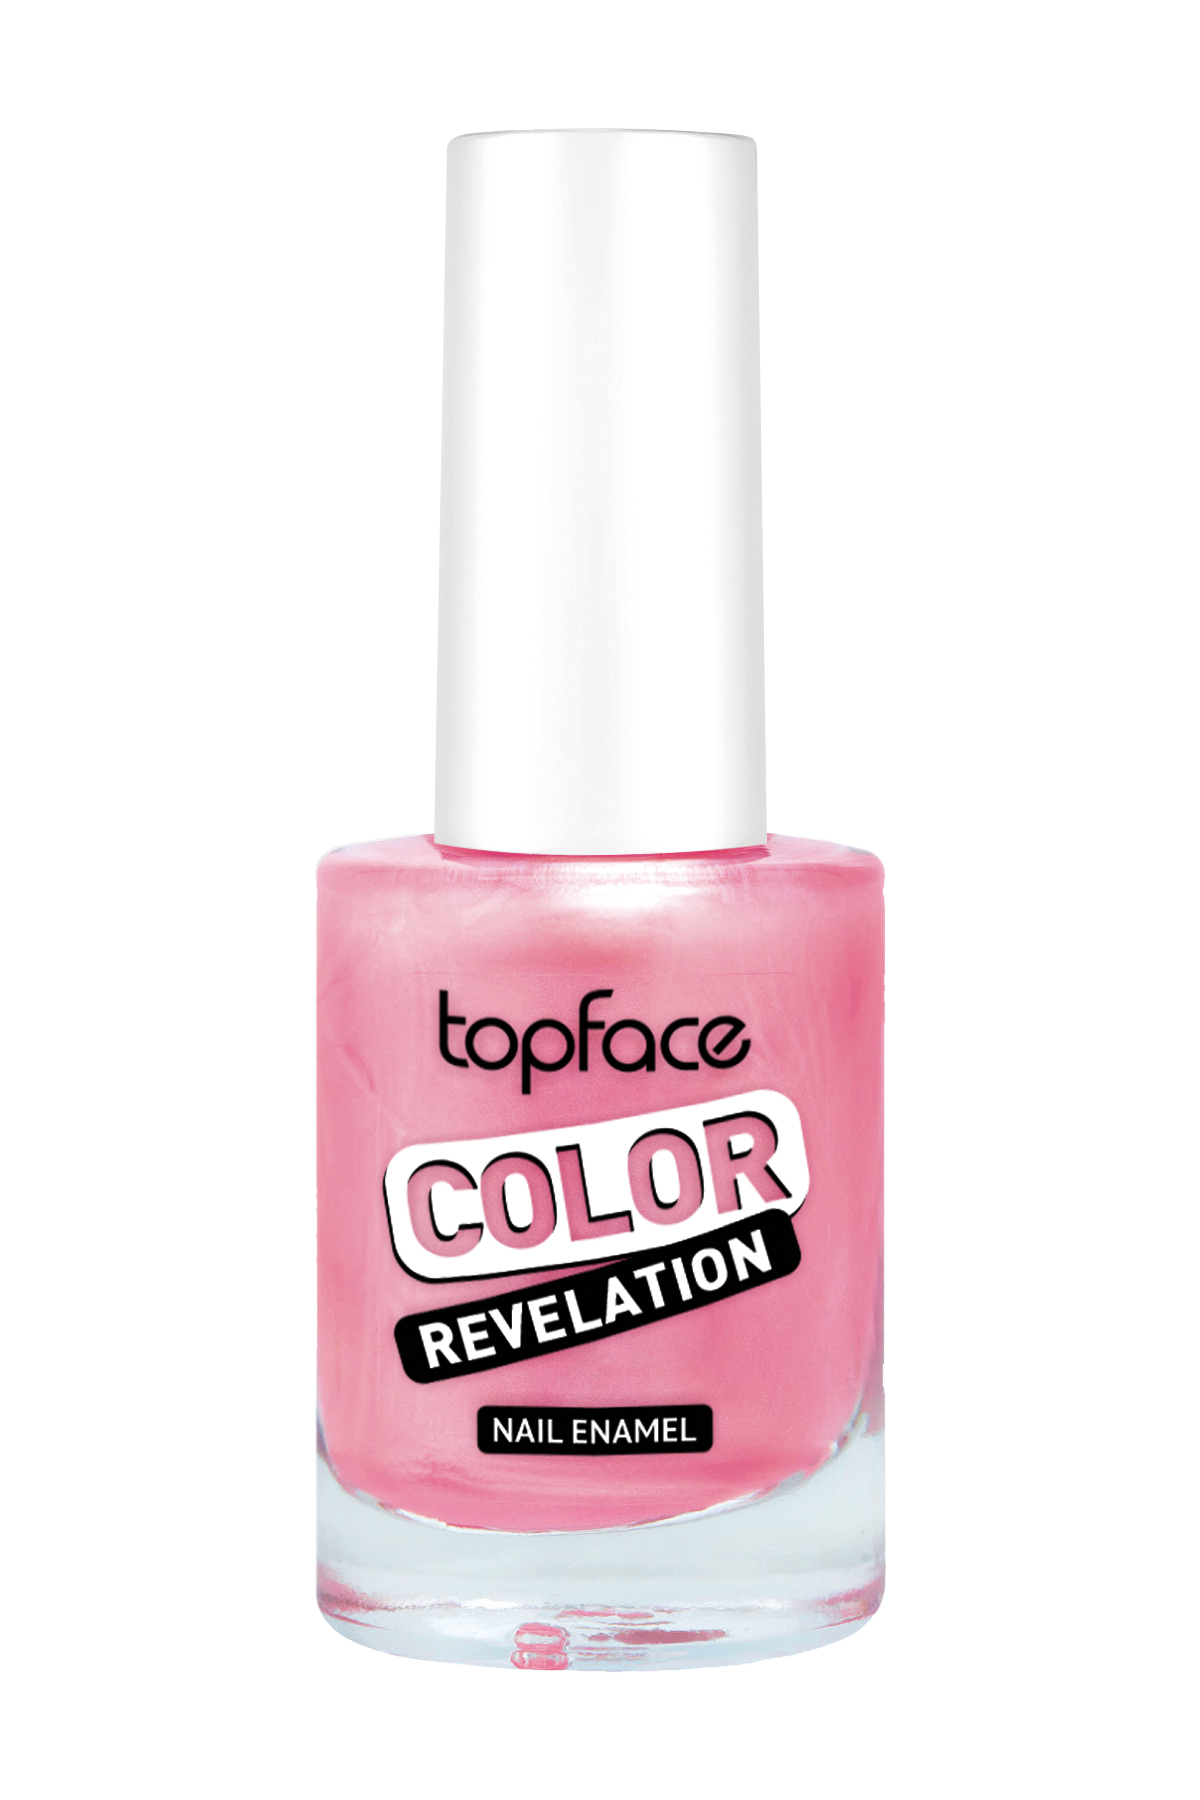 Topface pt105 лак для ногтей "Color Revelation"(9мл)- 062. Topface лак д\ногтей “lasting Color” pt104 (9 мл) №01 прозрачный. ТОПФЕЙС лак для ногтей pt105. Лак для ногтей topface Color Revelation свотчи. Топфейс косметика